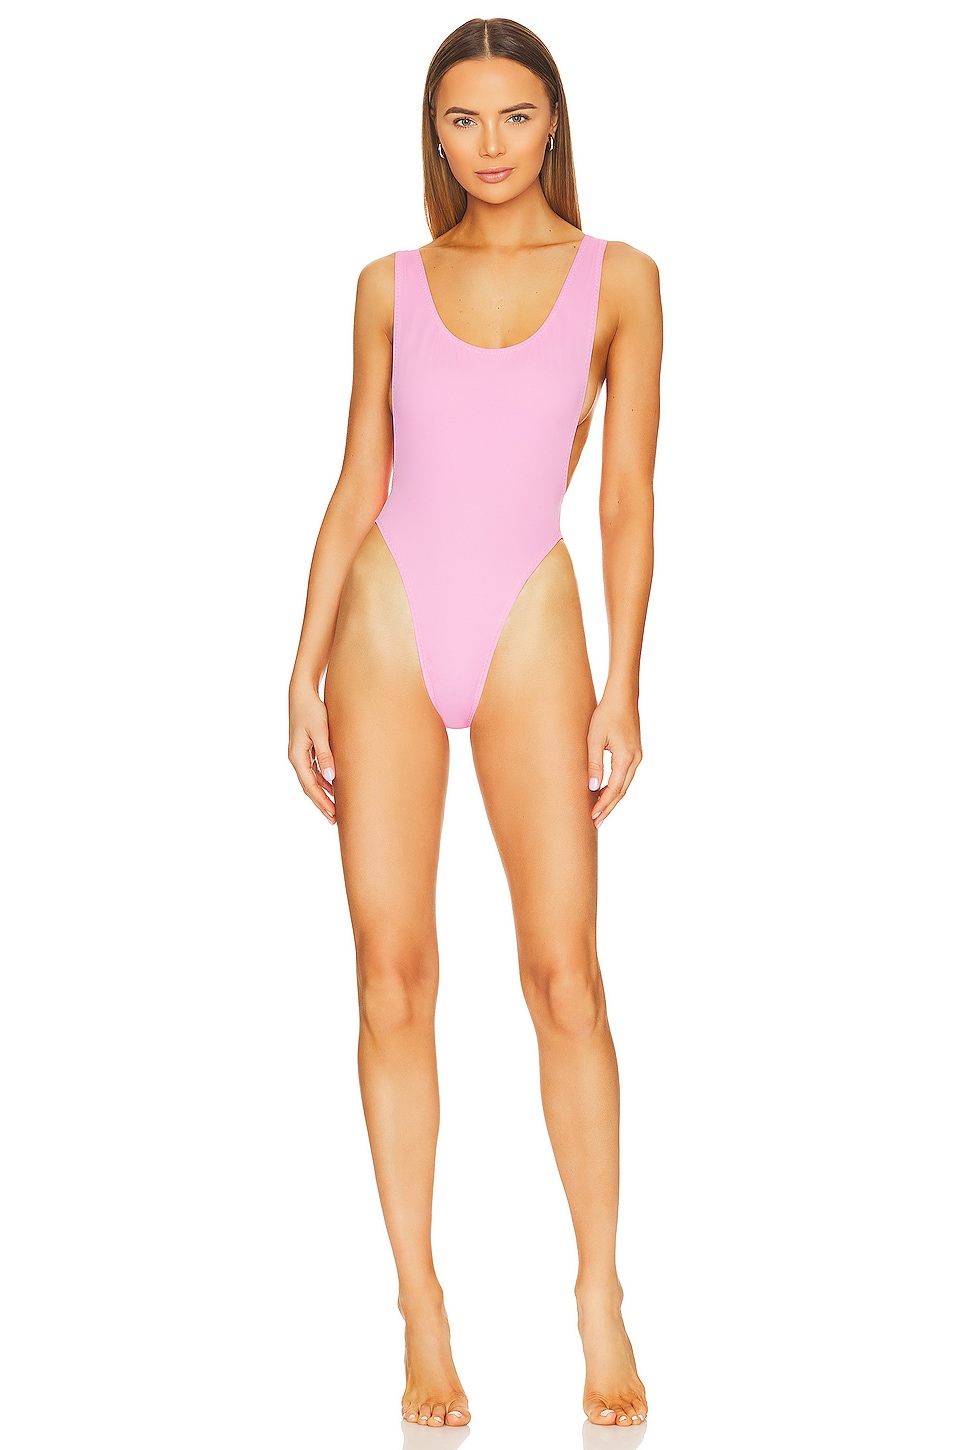 Купальник Norma Kamali Marissa, цвет Candy Pink облегающий купальник marissa со сборками norma kamali белый